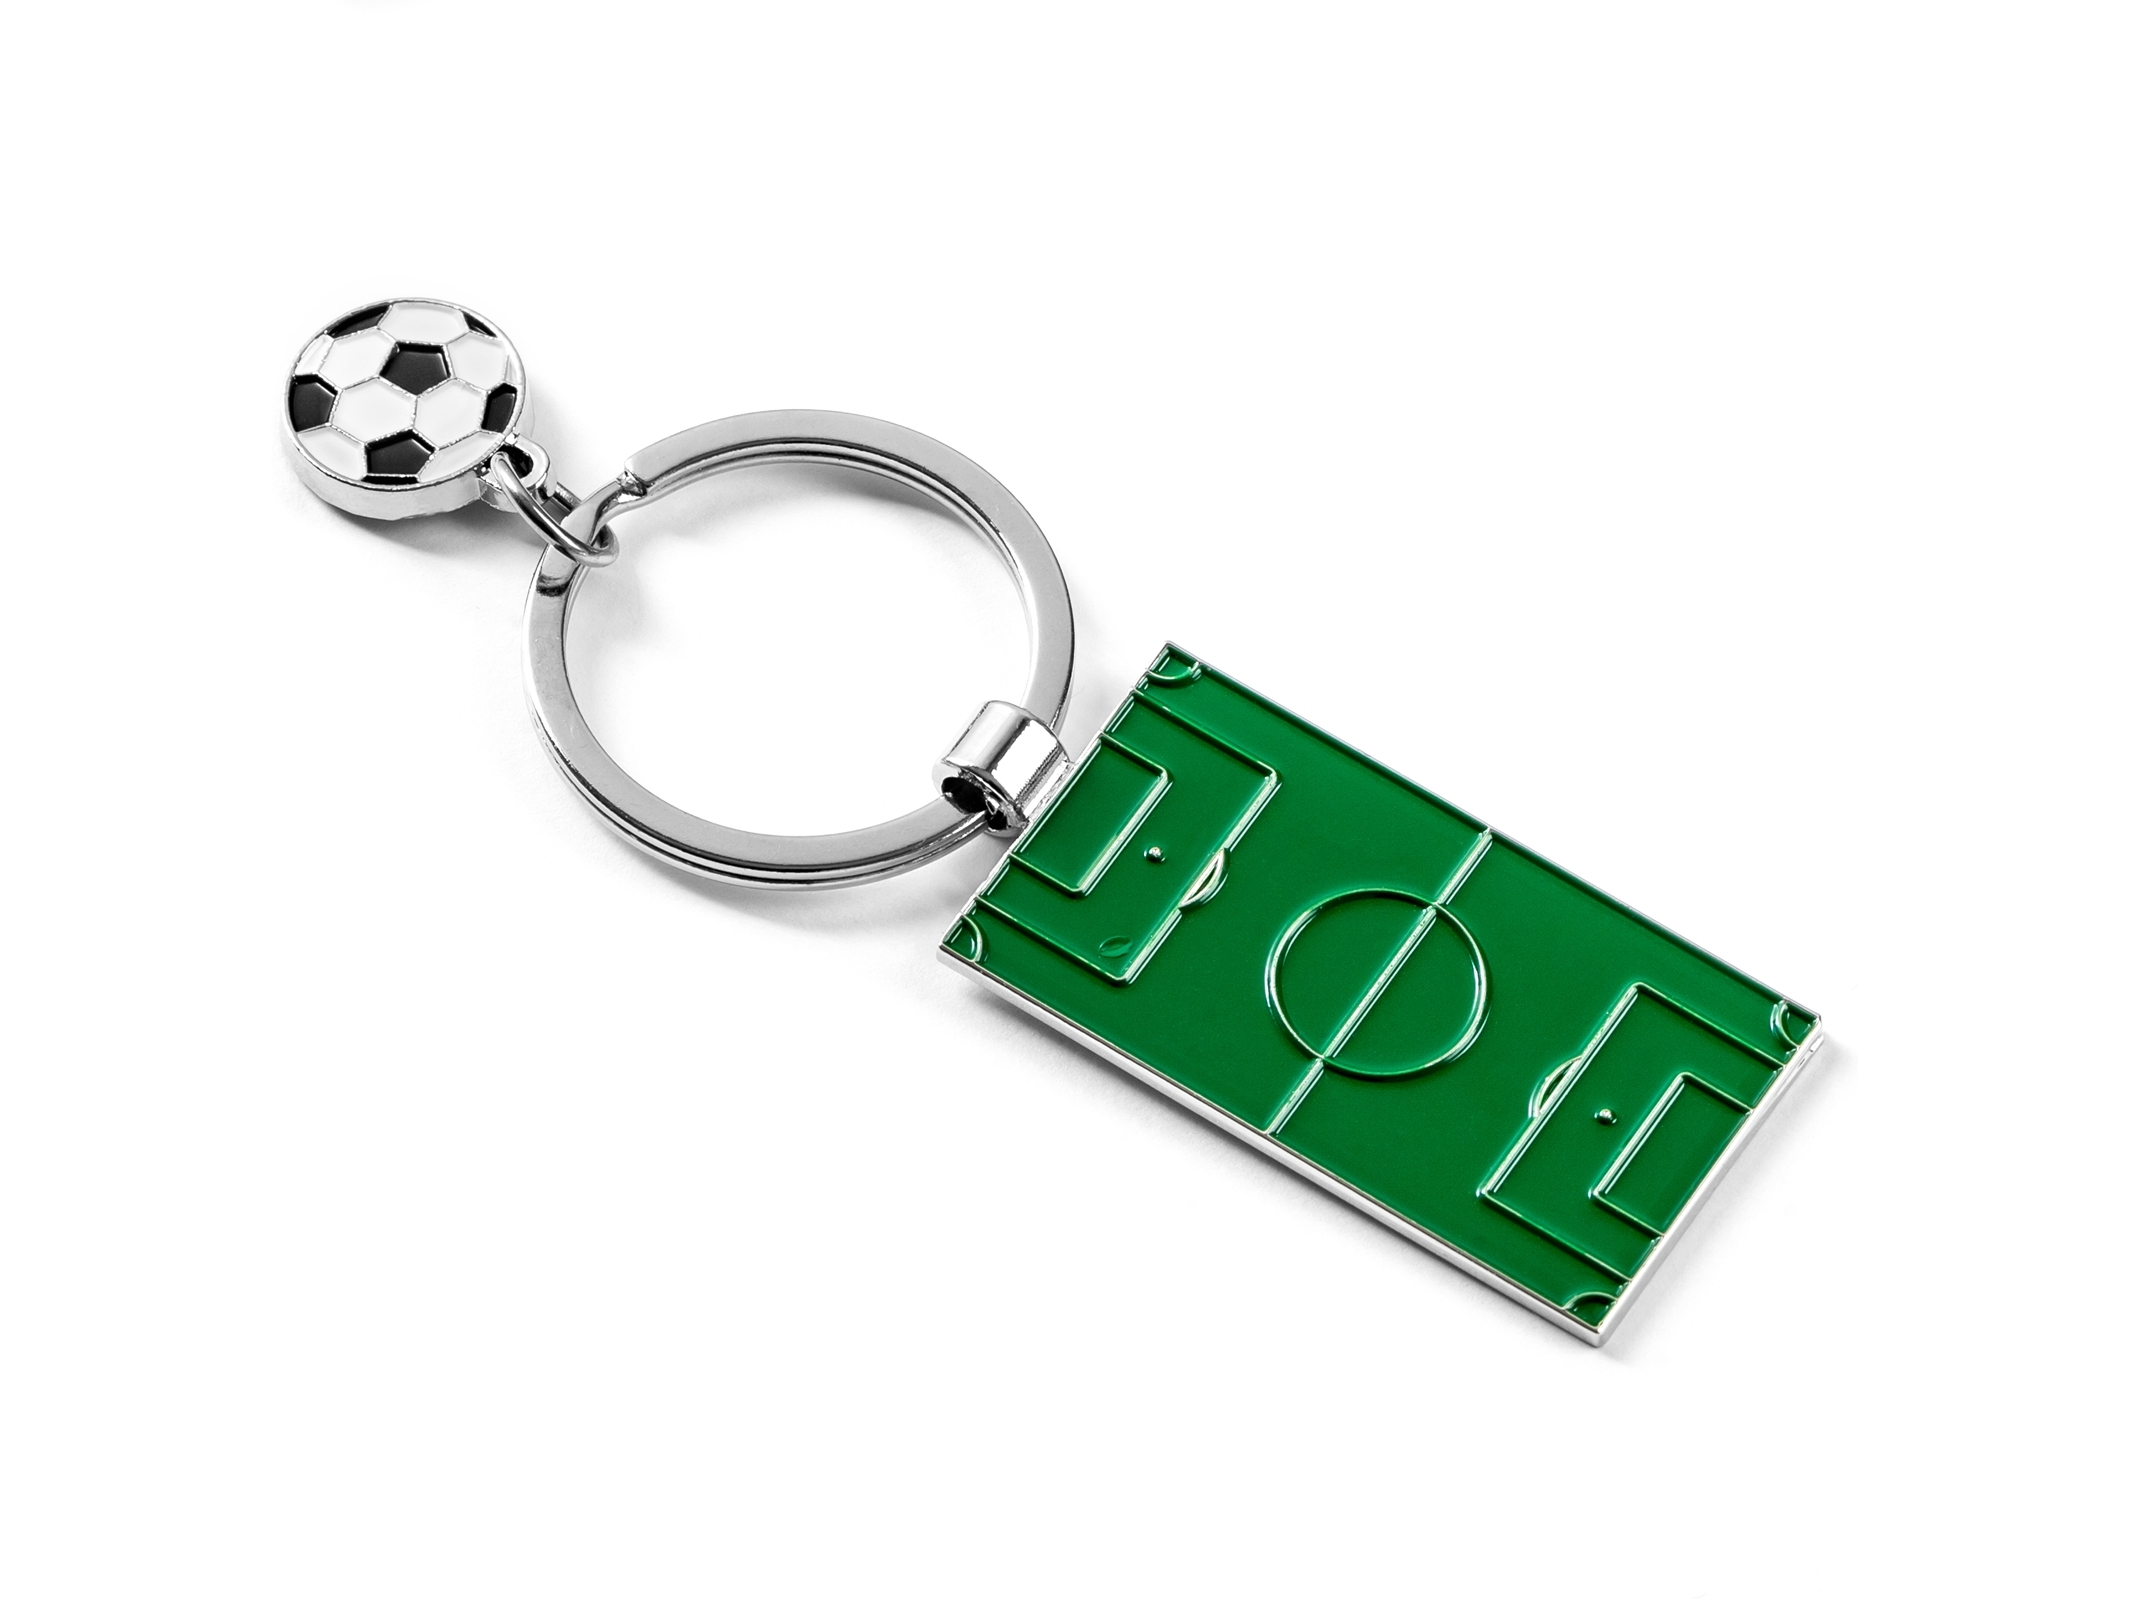 Přívěsek na klíče pro fotbalistu - Hřiště a fotbalový míč